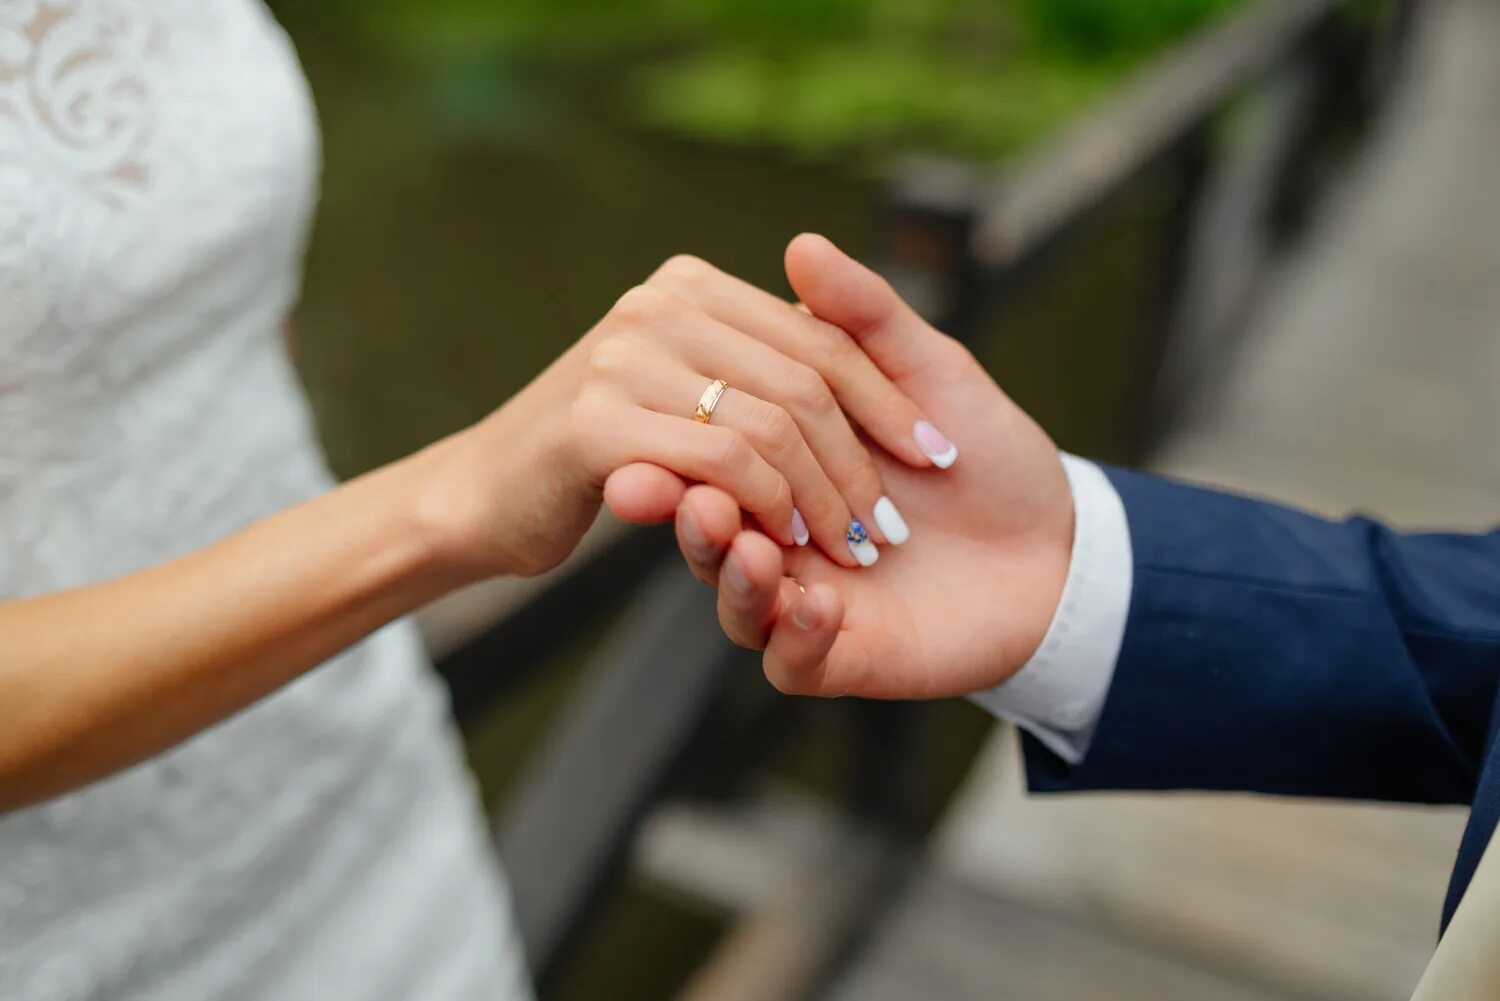 Брак. Свадьба мобилизованного. Институт брака картинки. Жених и невеста держат руки восьмеркой.